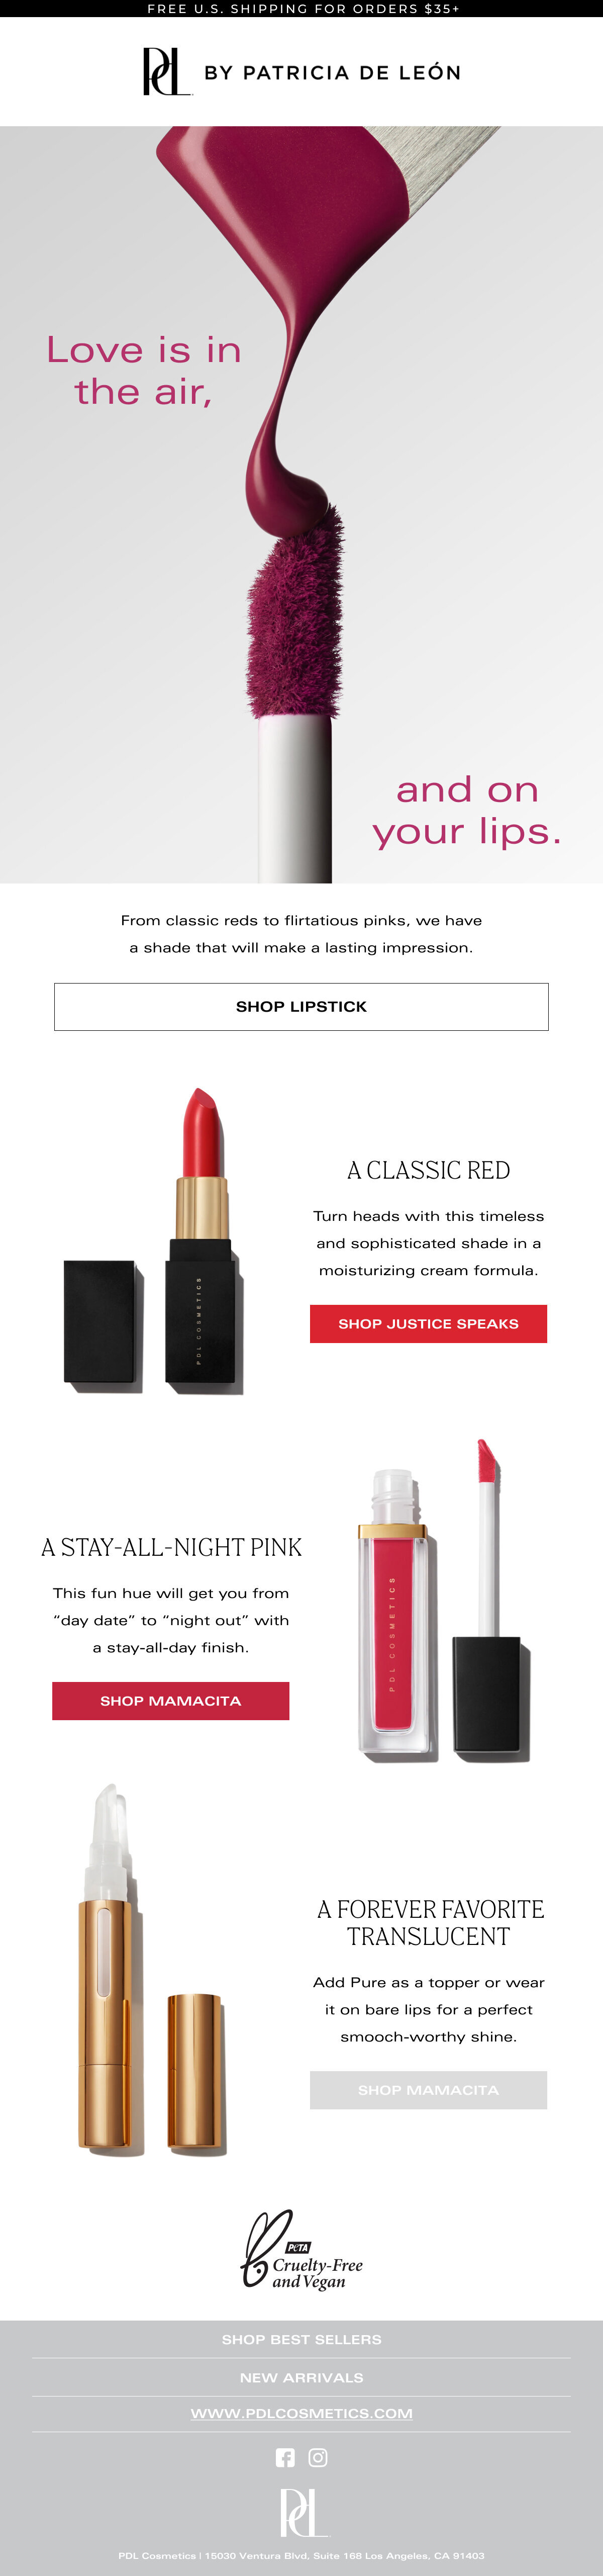 Lipstick for Vday